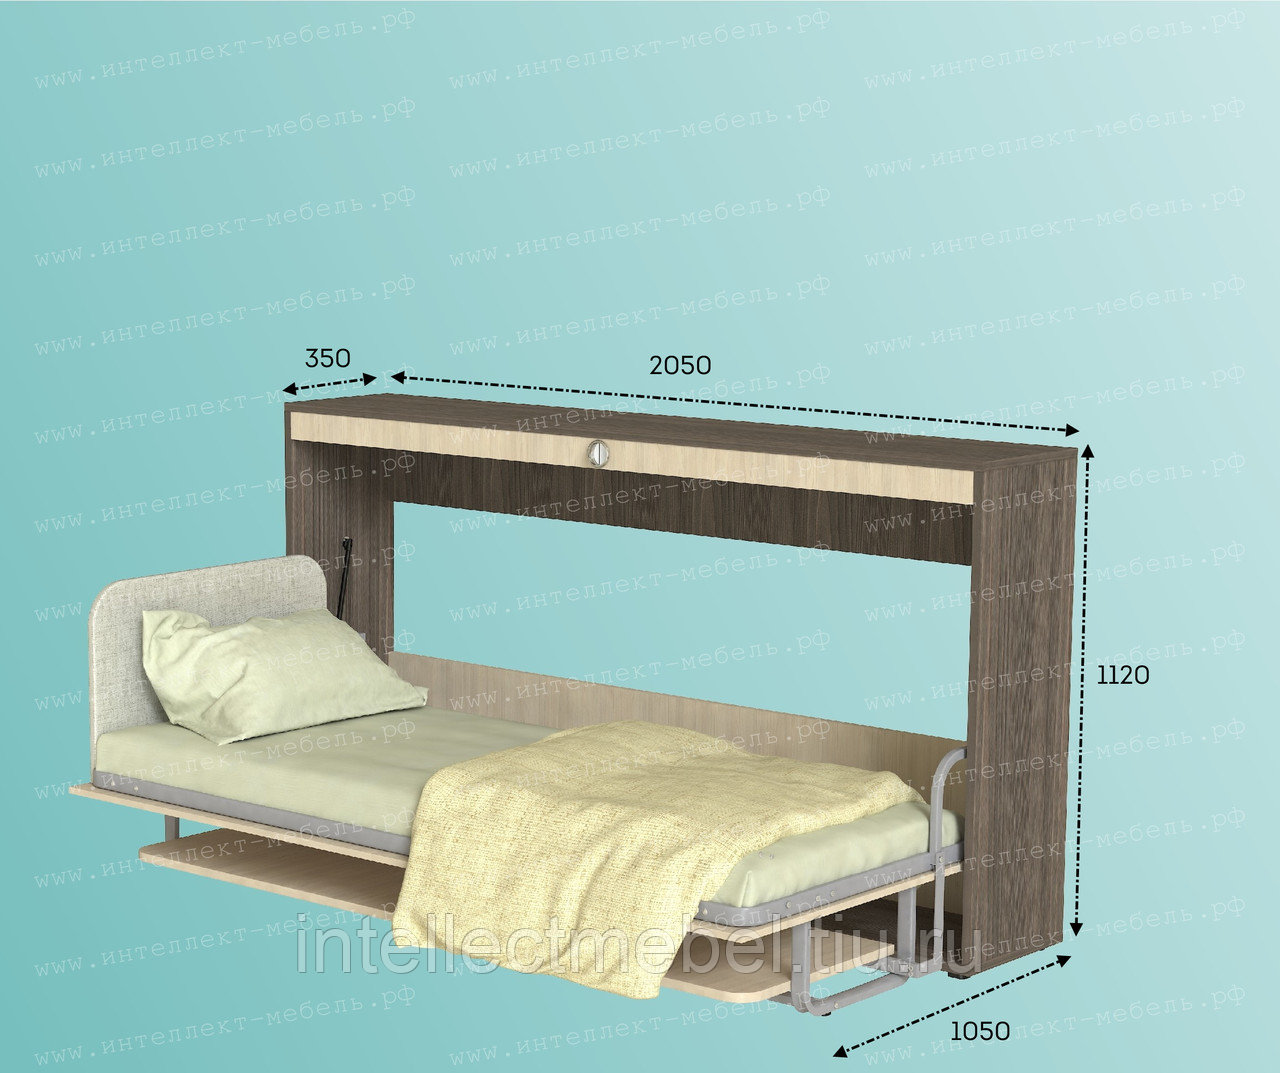 Кровать-трансформер, ее функционал, особенности и преимущества